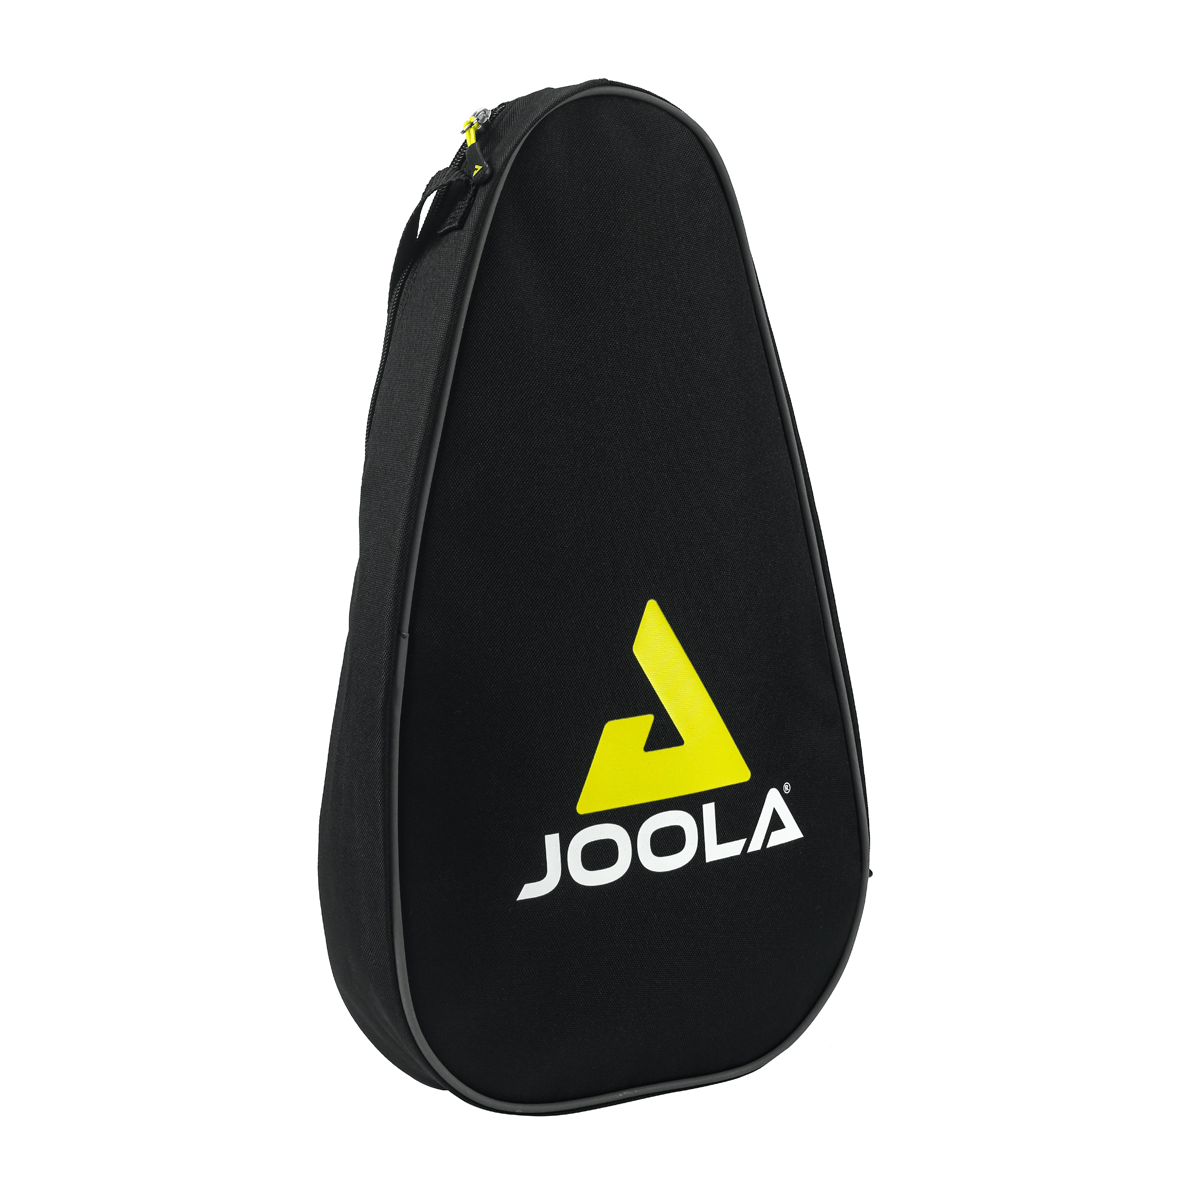 JOOLA Pickleballtasche VISION DUO | JOOLA Tischtennis GmbH